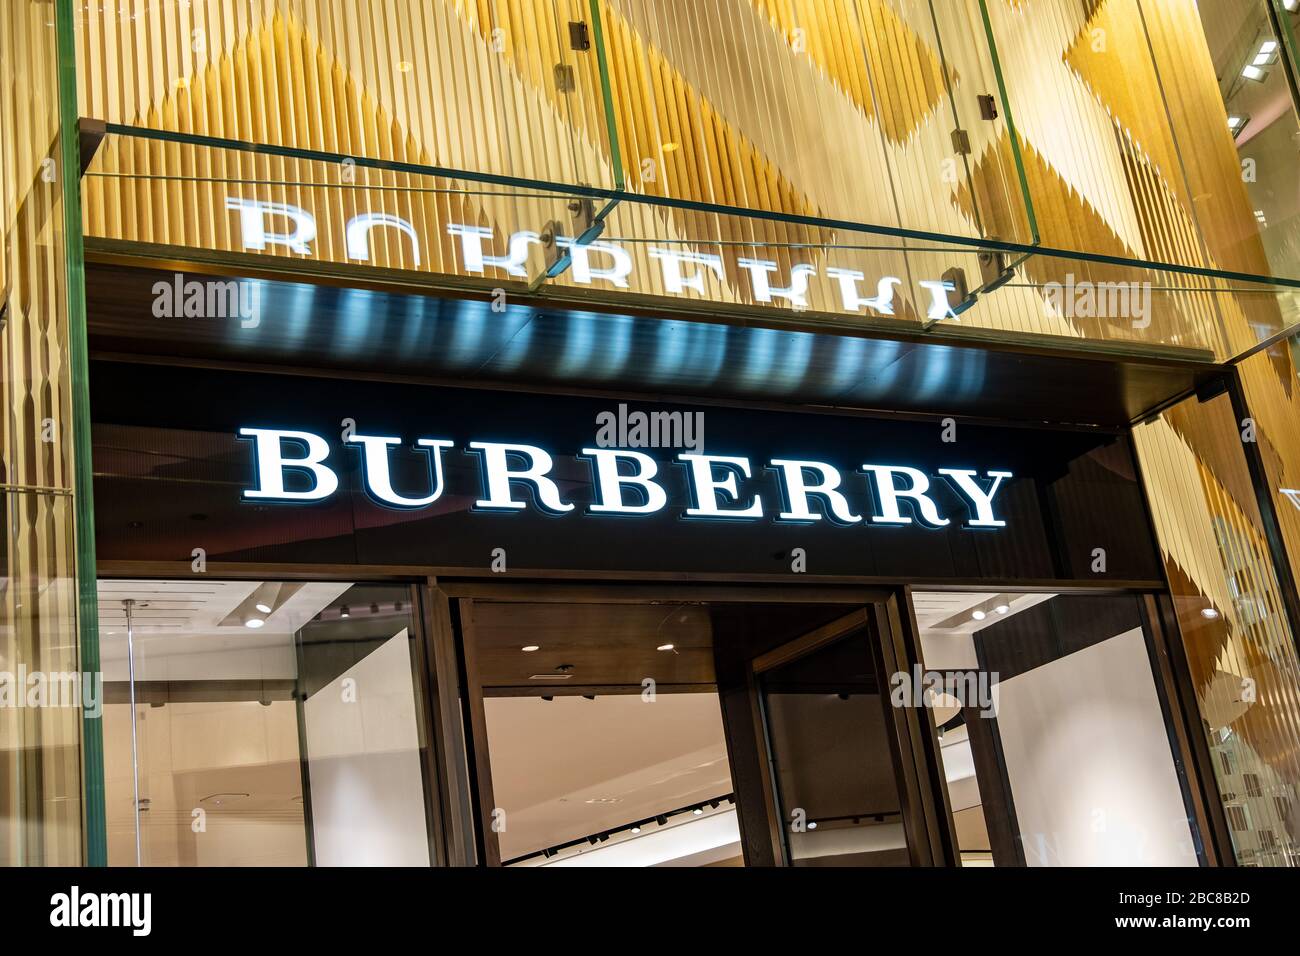 Burberry Store, una Marca minorista de lujo británica, logotipo exterior / señalización - Londres Foto de stock